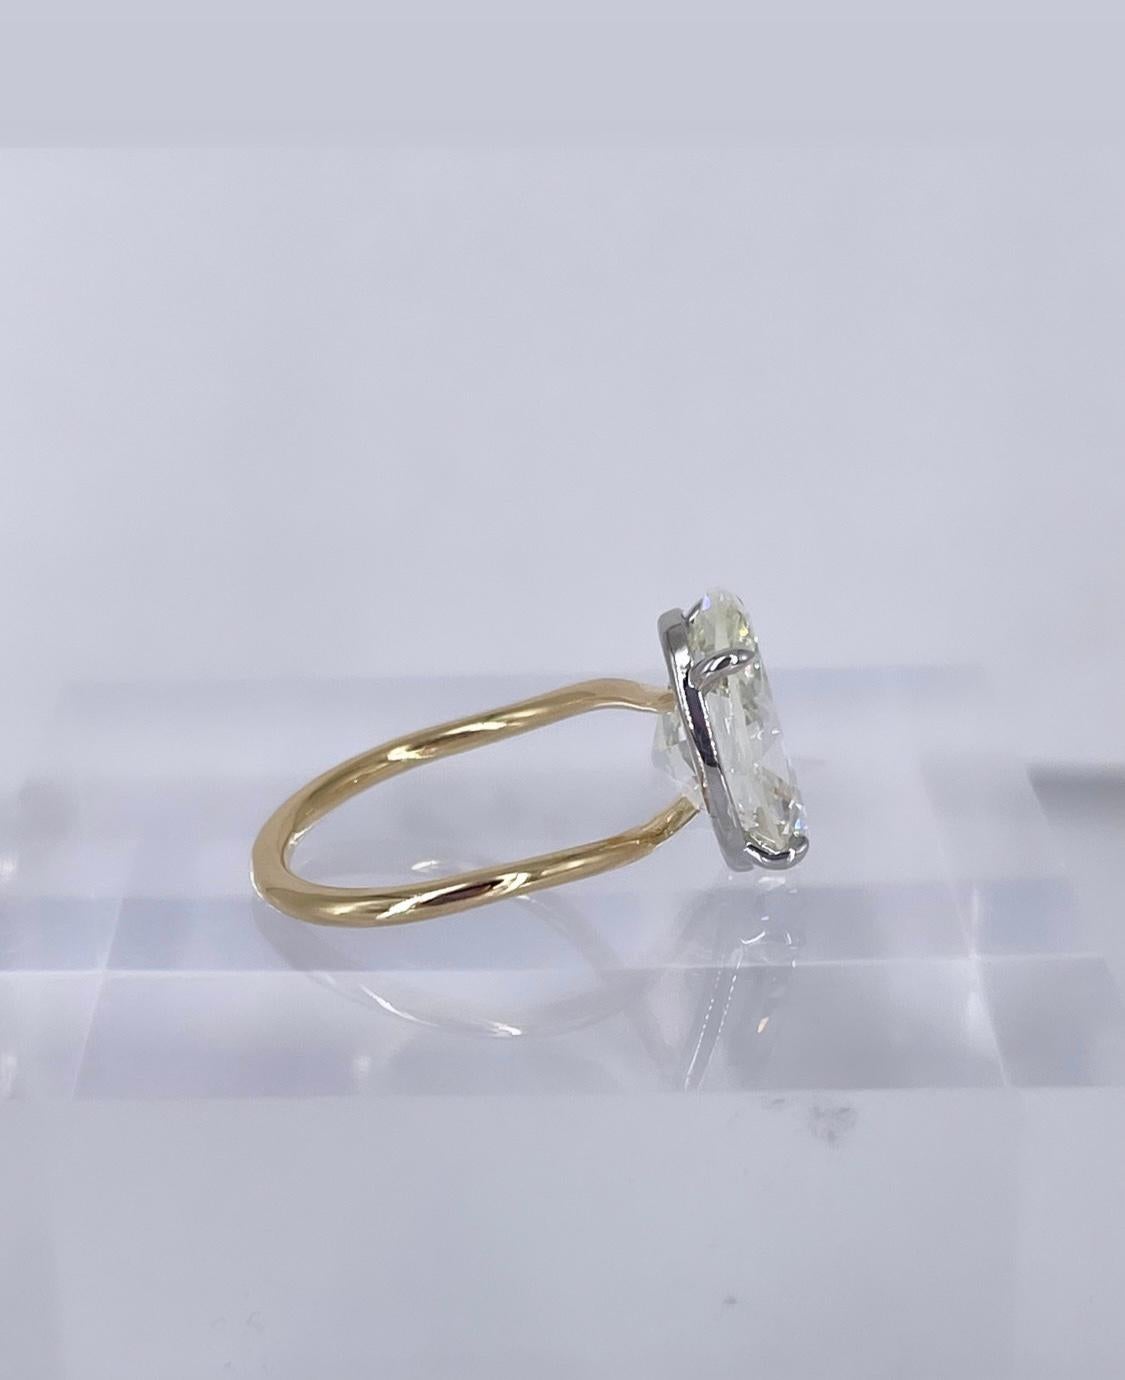 Dieser schlichte, elegante Verlobungsring ist J. Birnbachs moderne Interpretation des klassischen Solitärs. Der Ring ist mit einem GIA-zertifizierten ovalen Diamanten von 5,02 Karat besetzt, der als Farbe I und Reinheit SI1 eingestuft ist. Die